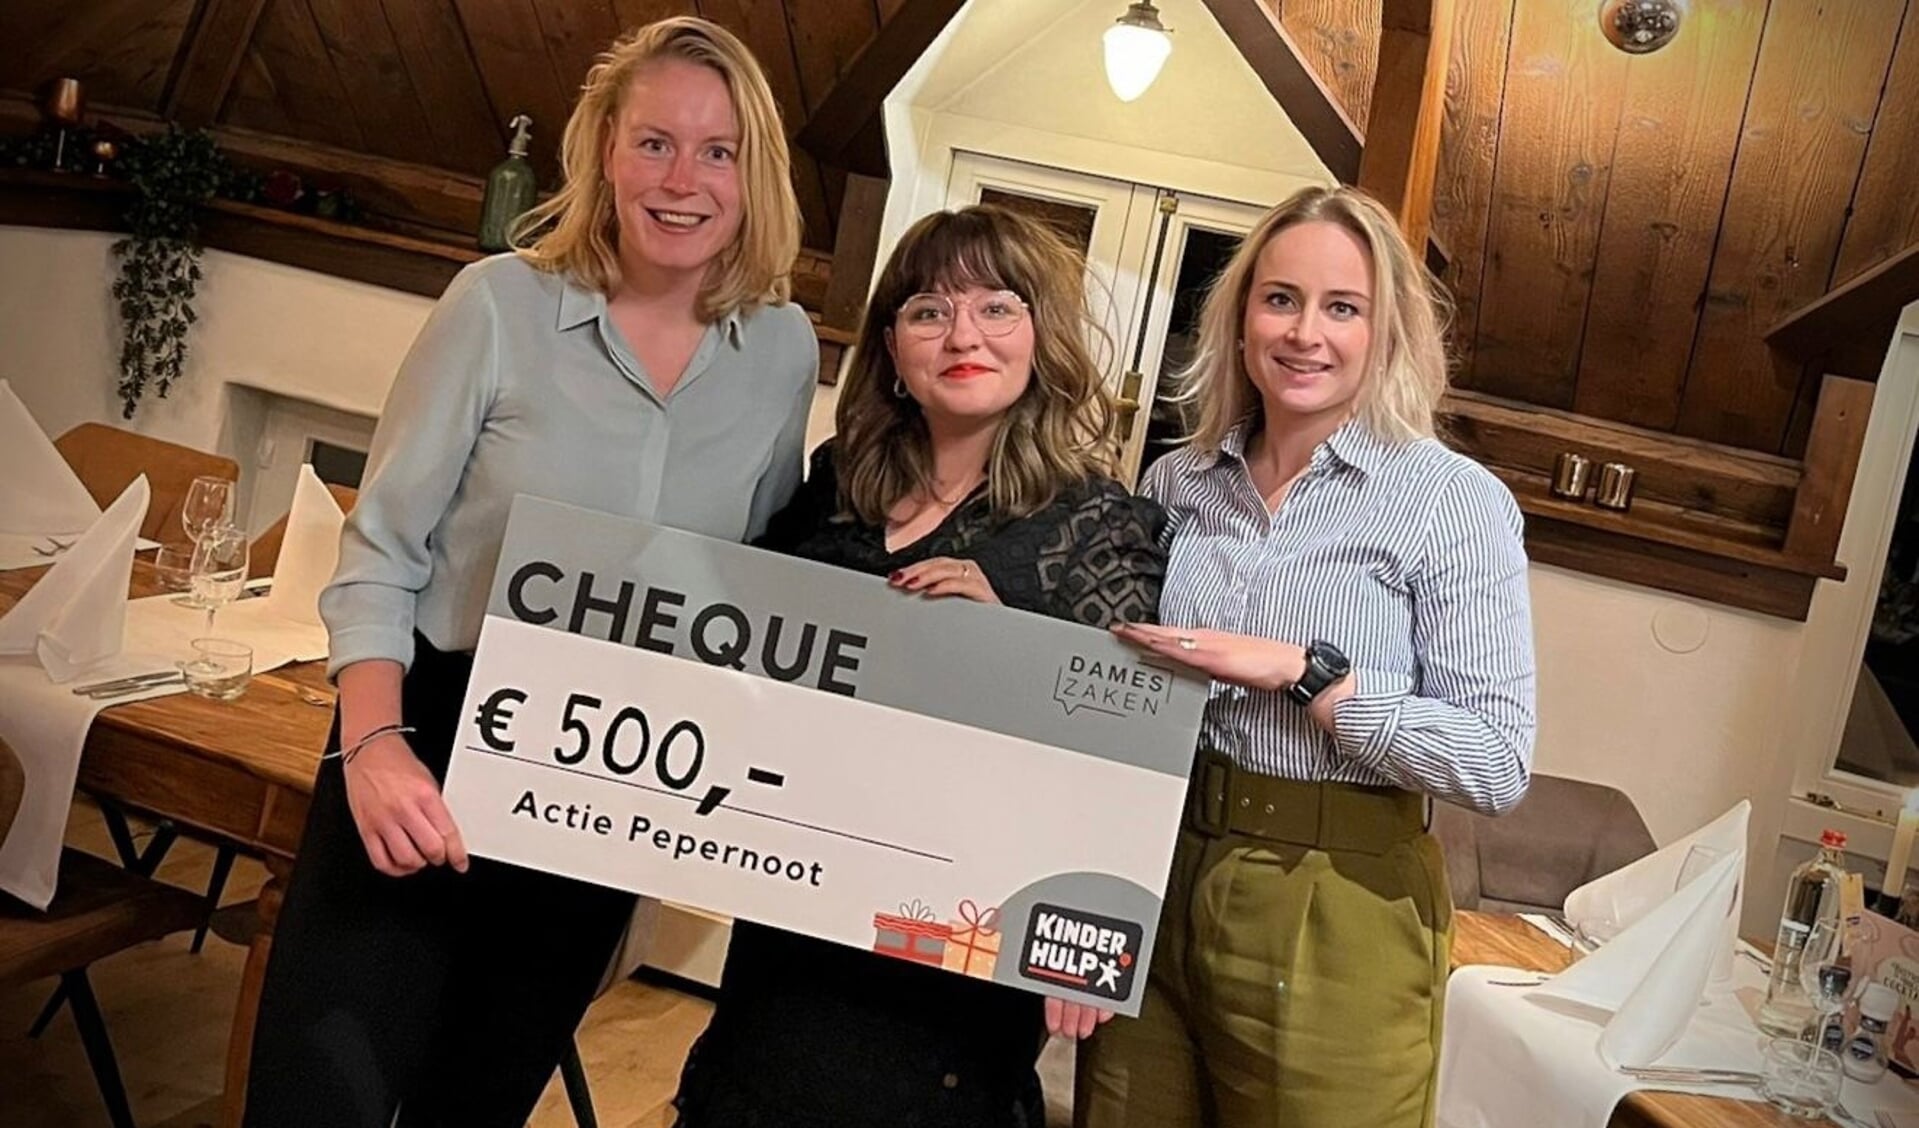 • De dames van Dameszaken zamelden 500 euro in voor Actie Pepernoot.